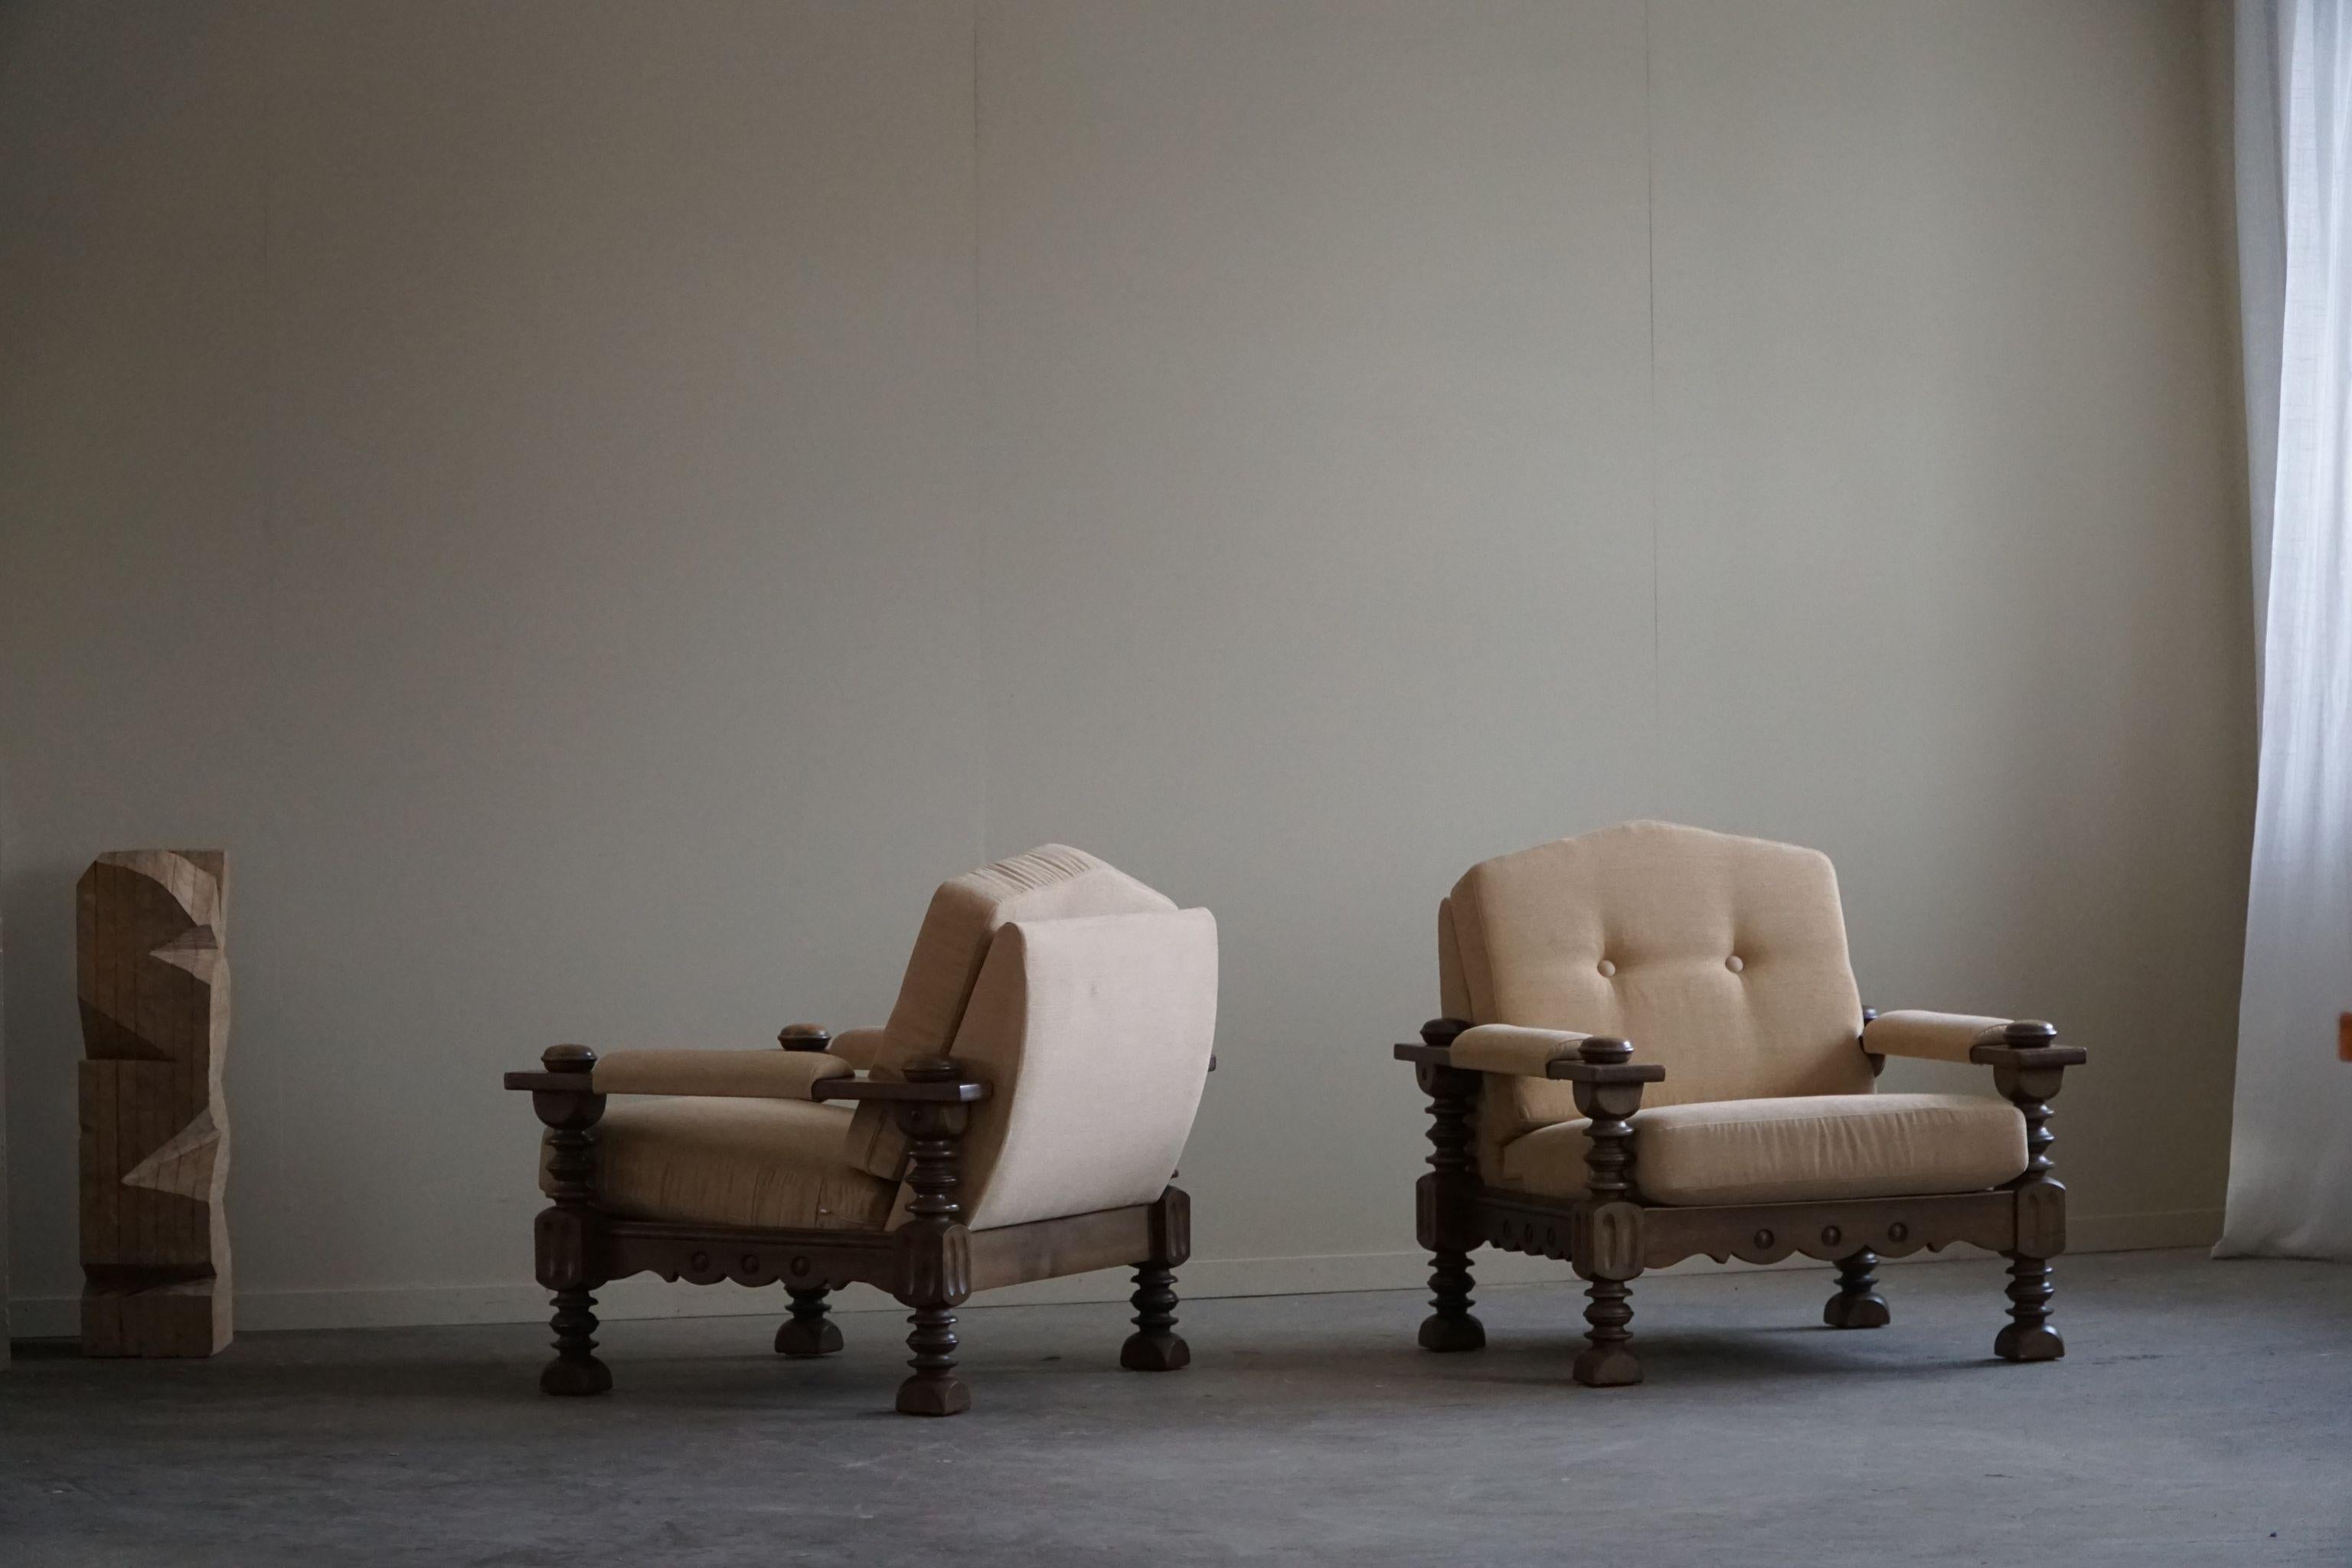 Magnifique paire sculpturale de chaises longues modernes danoises à la manière de Henning (Henry) Kjærnulf. Fabriqué en chêne massif teinté foncé avec des coussins rembourrés en laine couleur sable. Fabriqué dans les années 1960 par un ébéniste